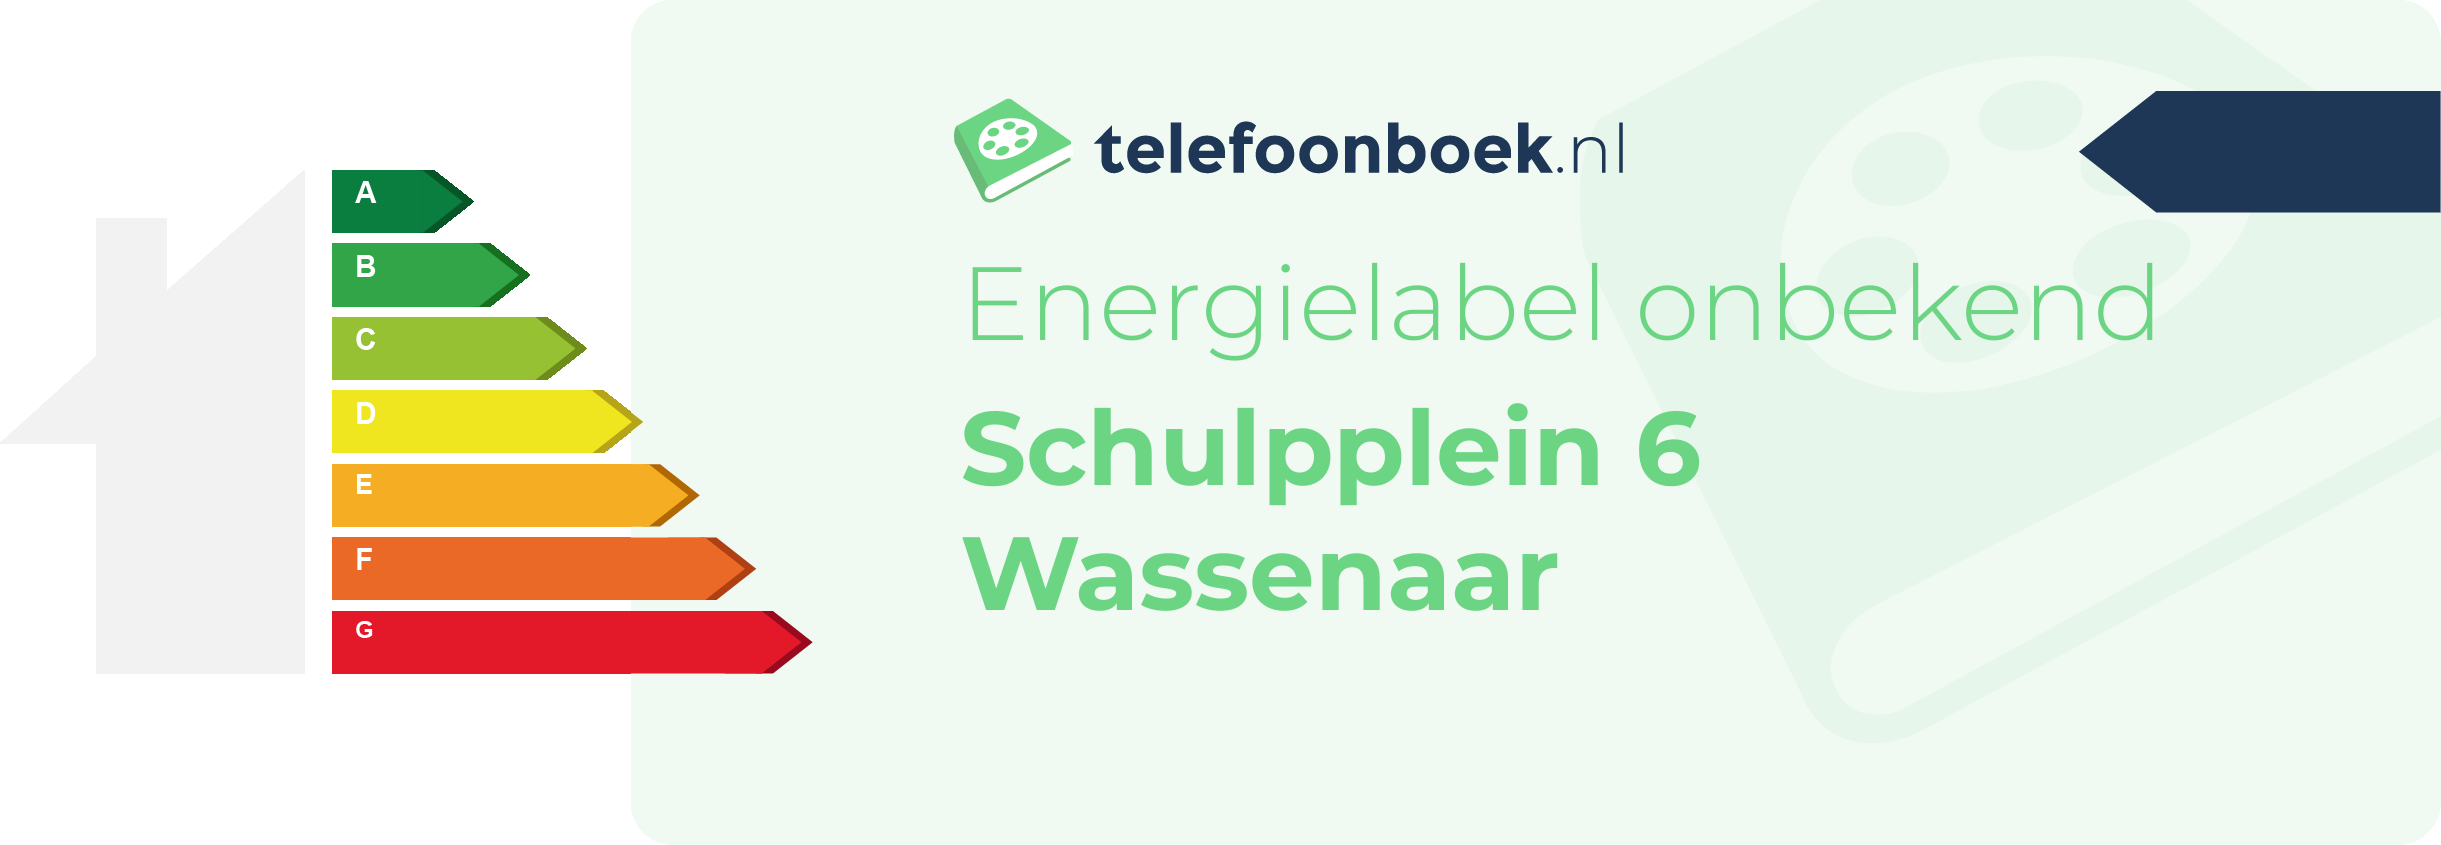 Energielabel Schulpplein 6 Wassenaar